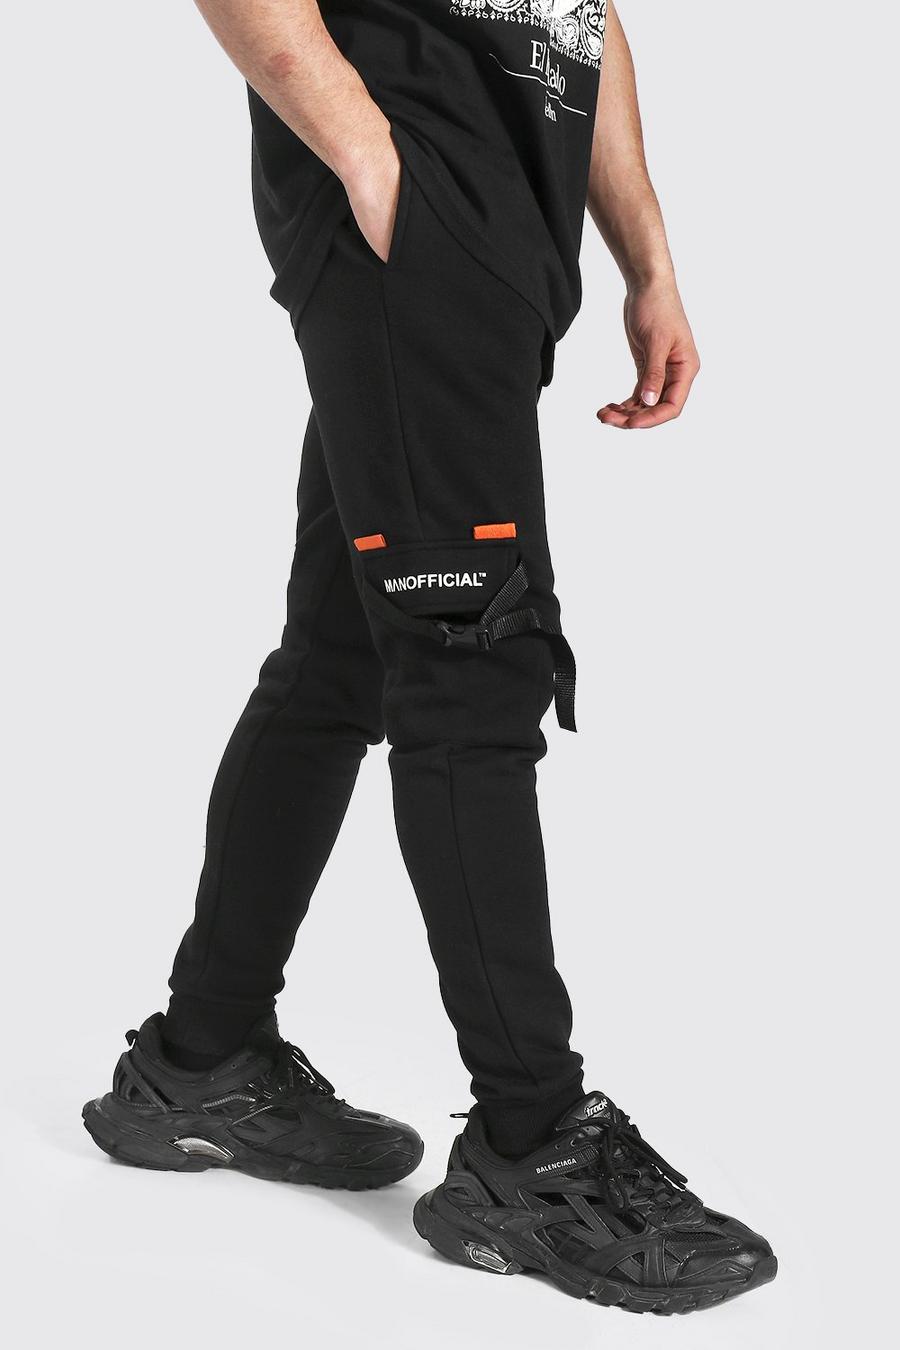 שחור מכנסי ריצה דגמ"ח מבד ג'רסי עם הדפס כיתוב Man Official image number 1